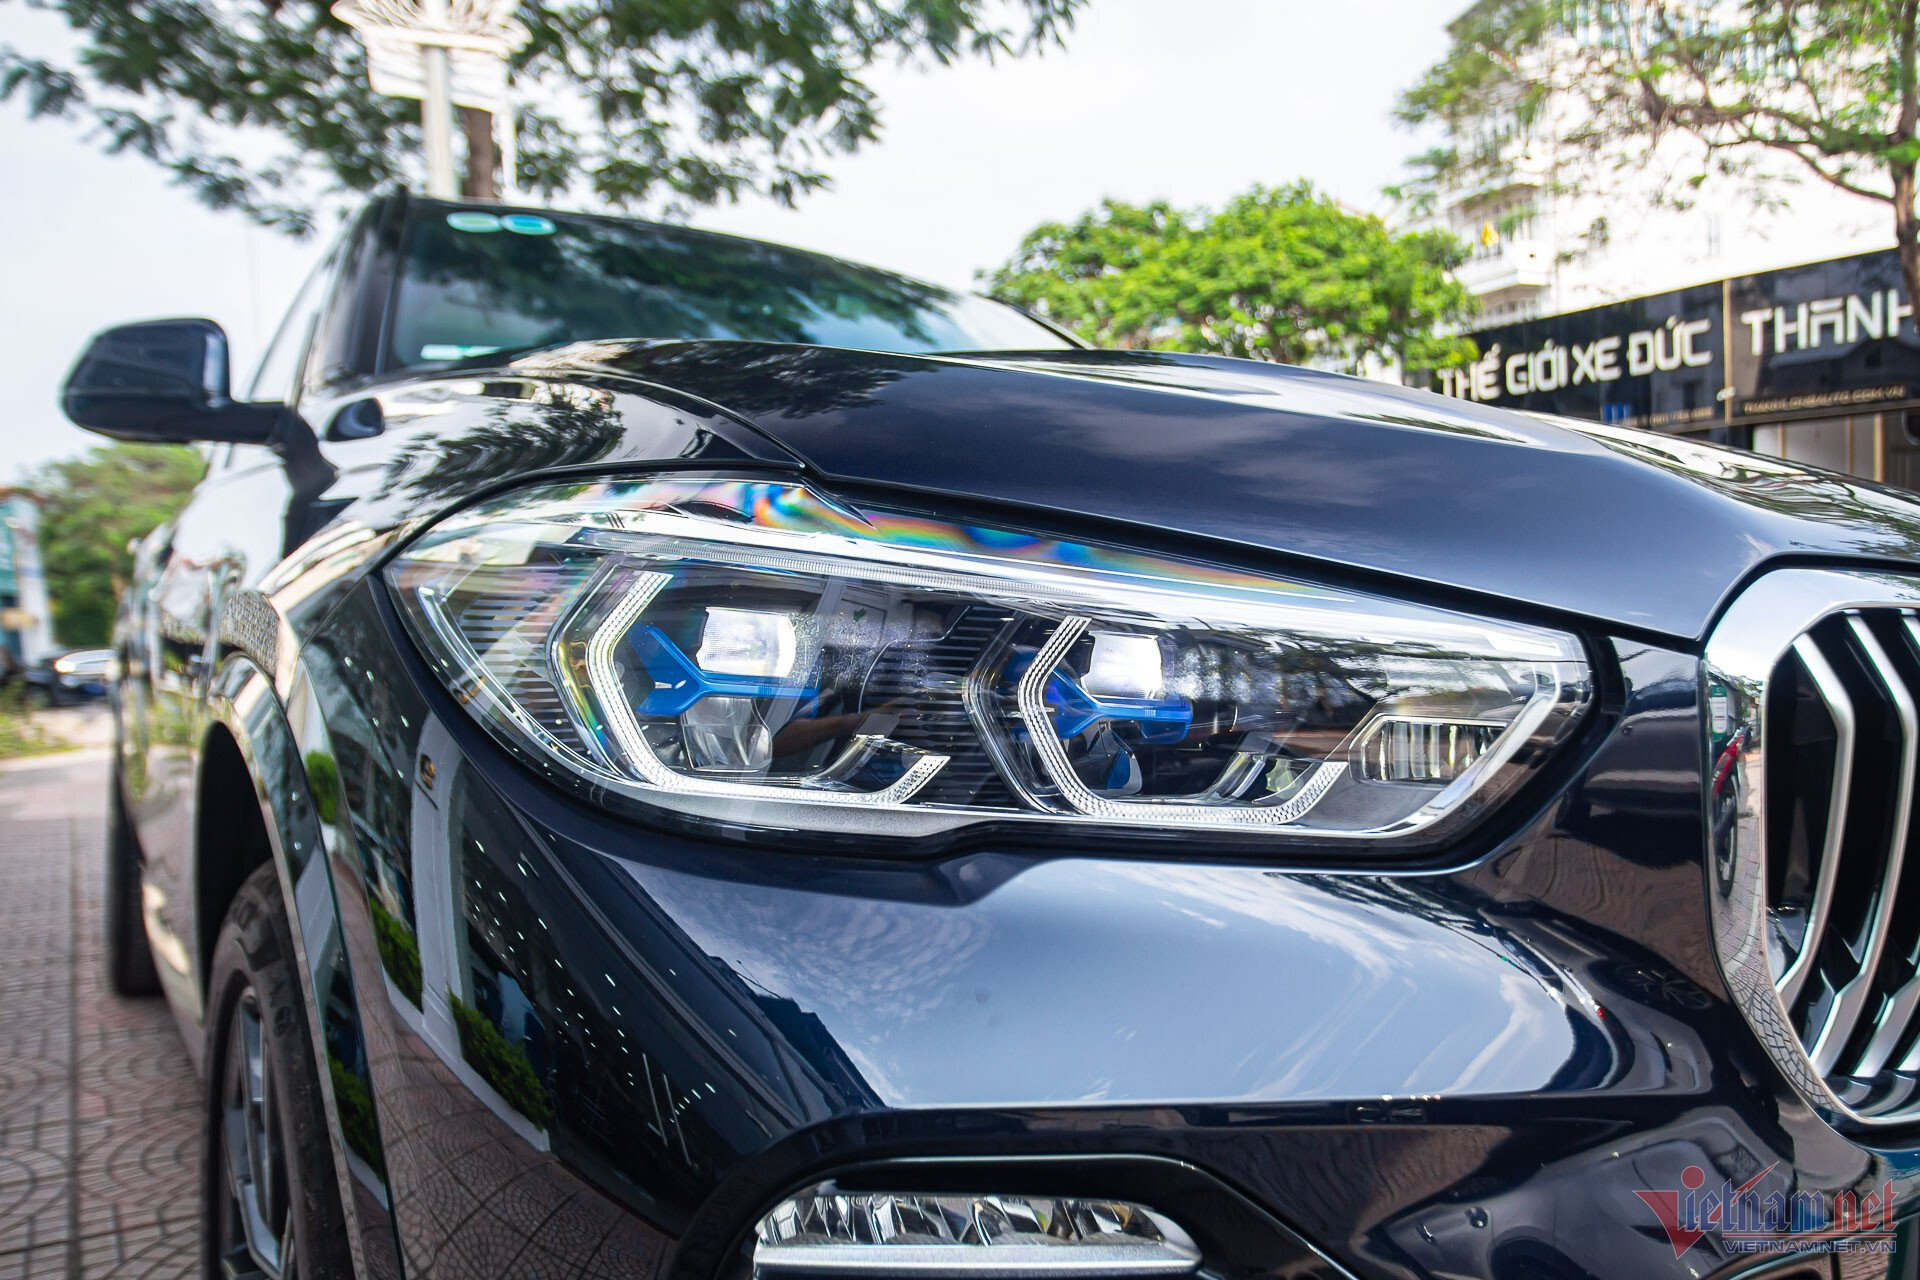 BMW X5 đời 2020 mới lăn bánh 100 km, chủ xe bán lỗ hơn 1 tỷ đồng - 4